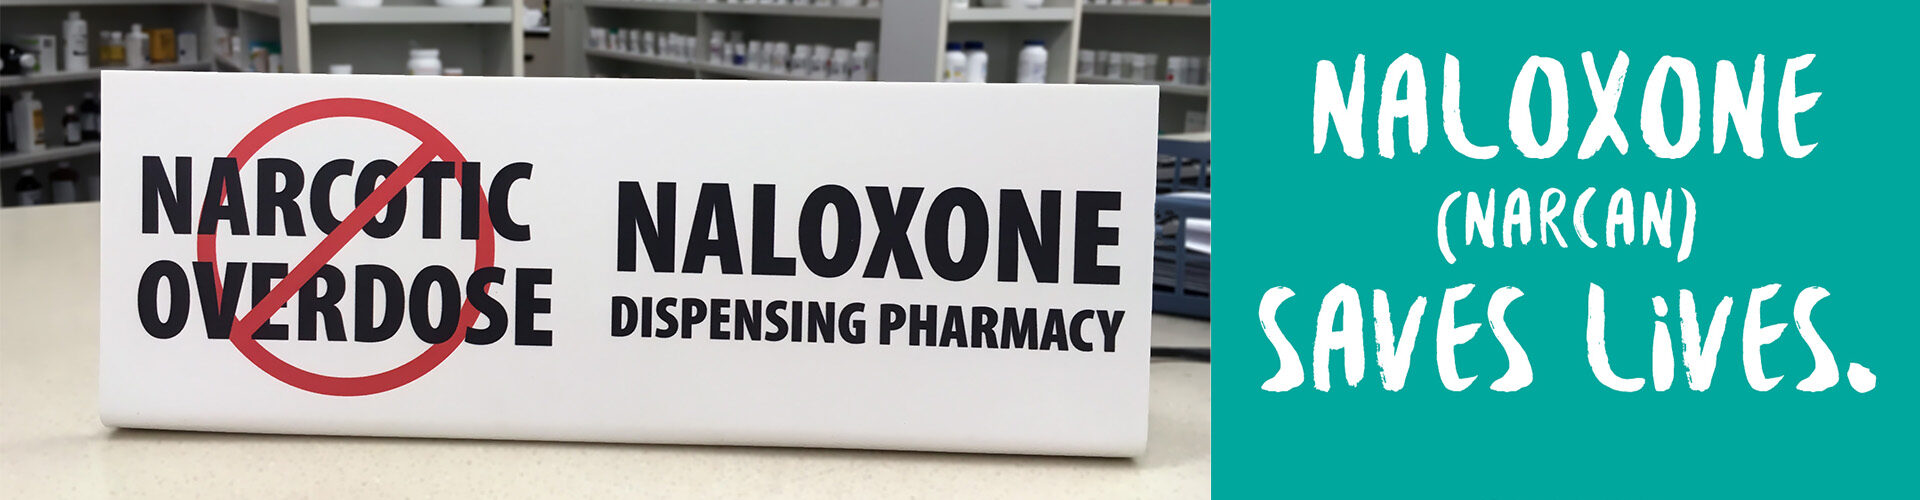 naloxone dispensing pharmacy - narcan saves lives